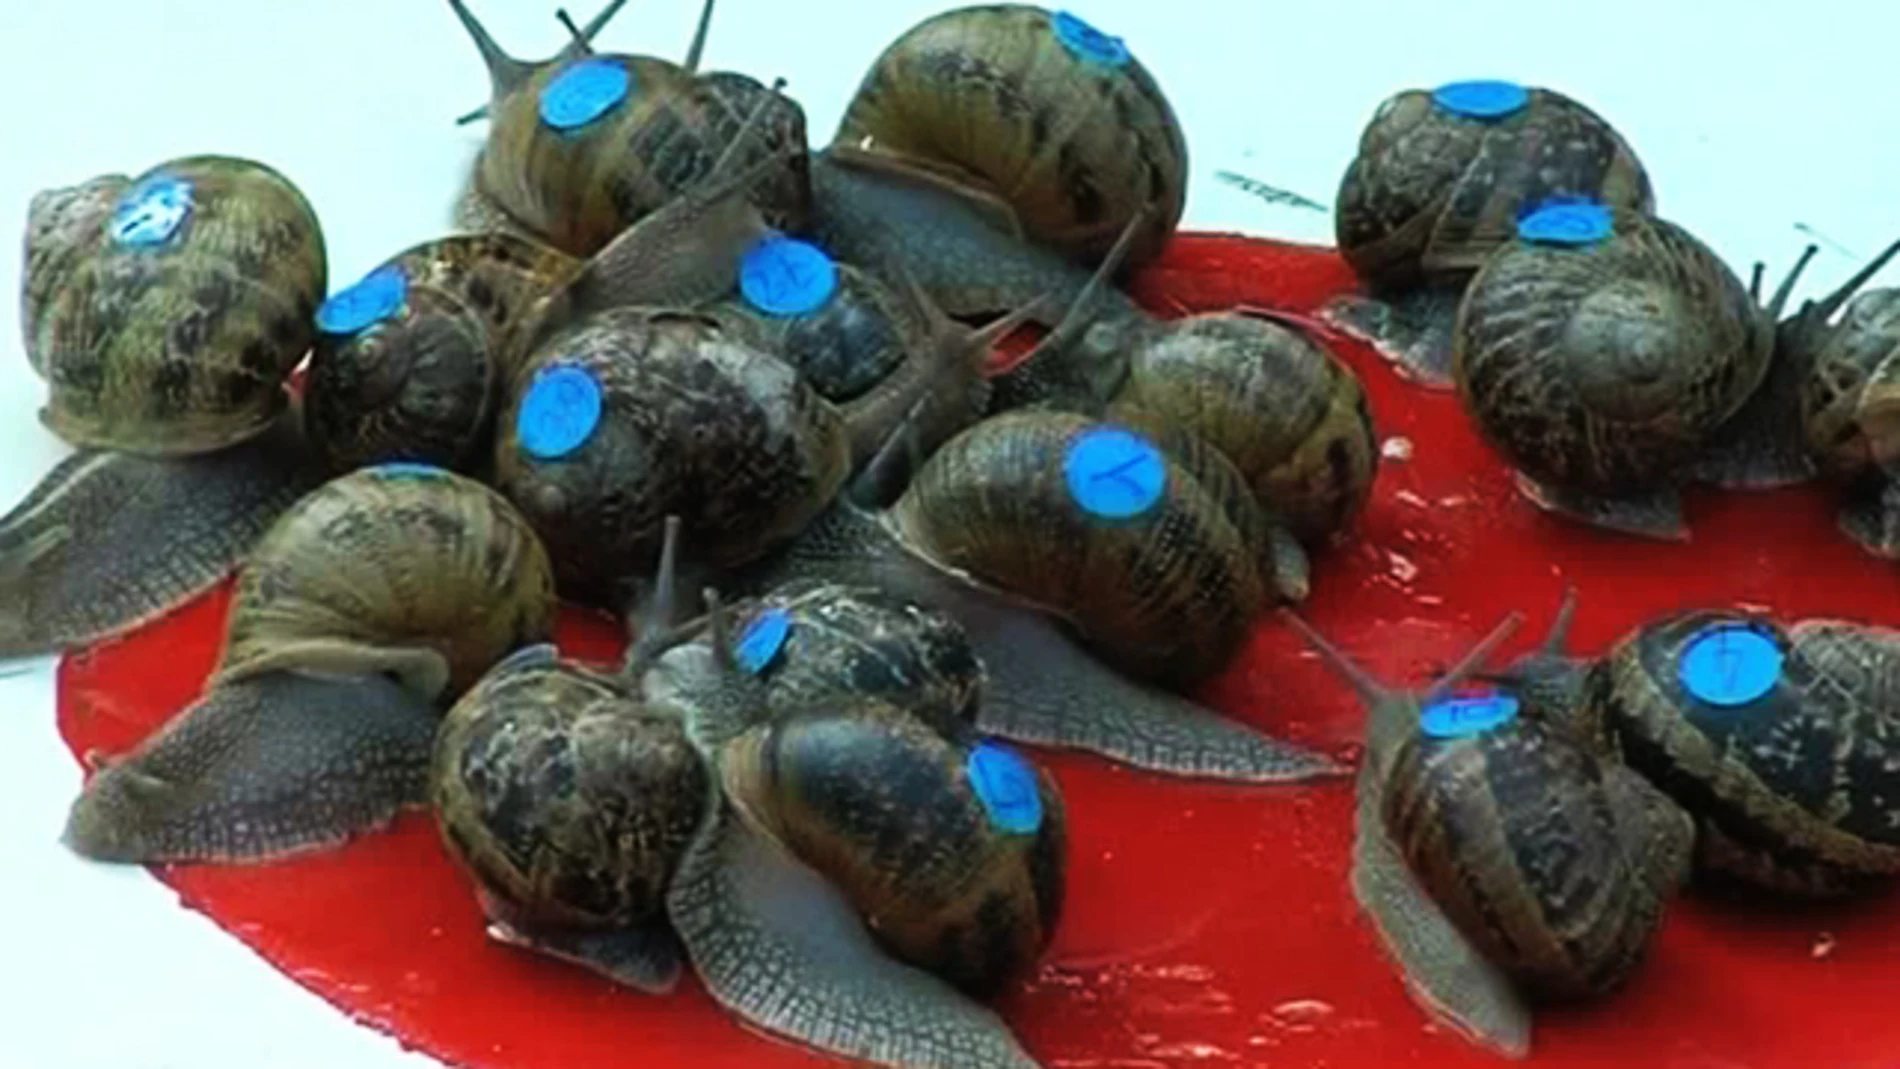  Una carrera de caracoles acapara las miradas en el sur de Francia